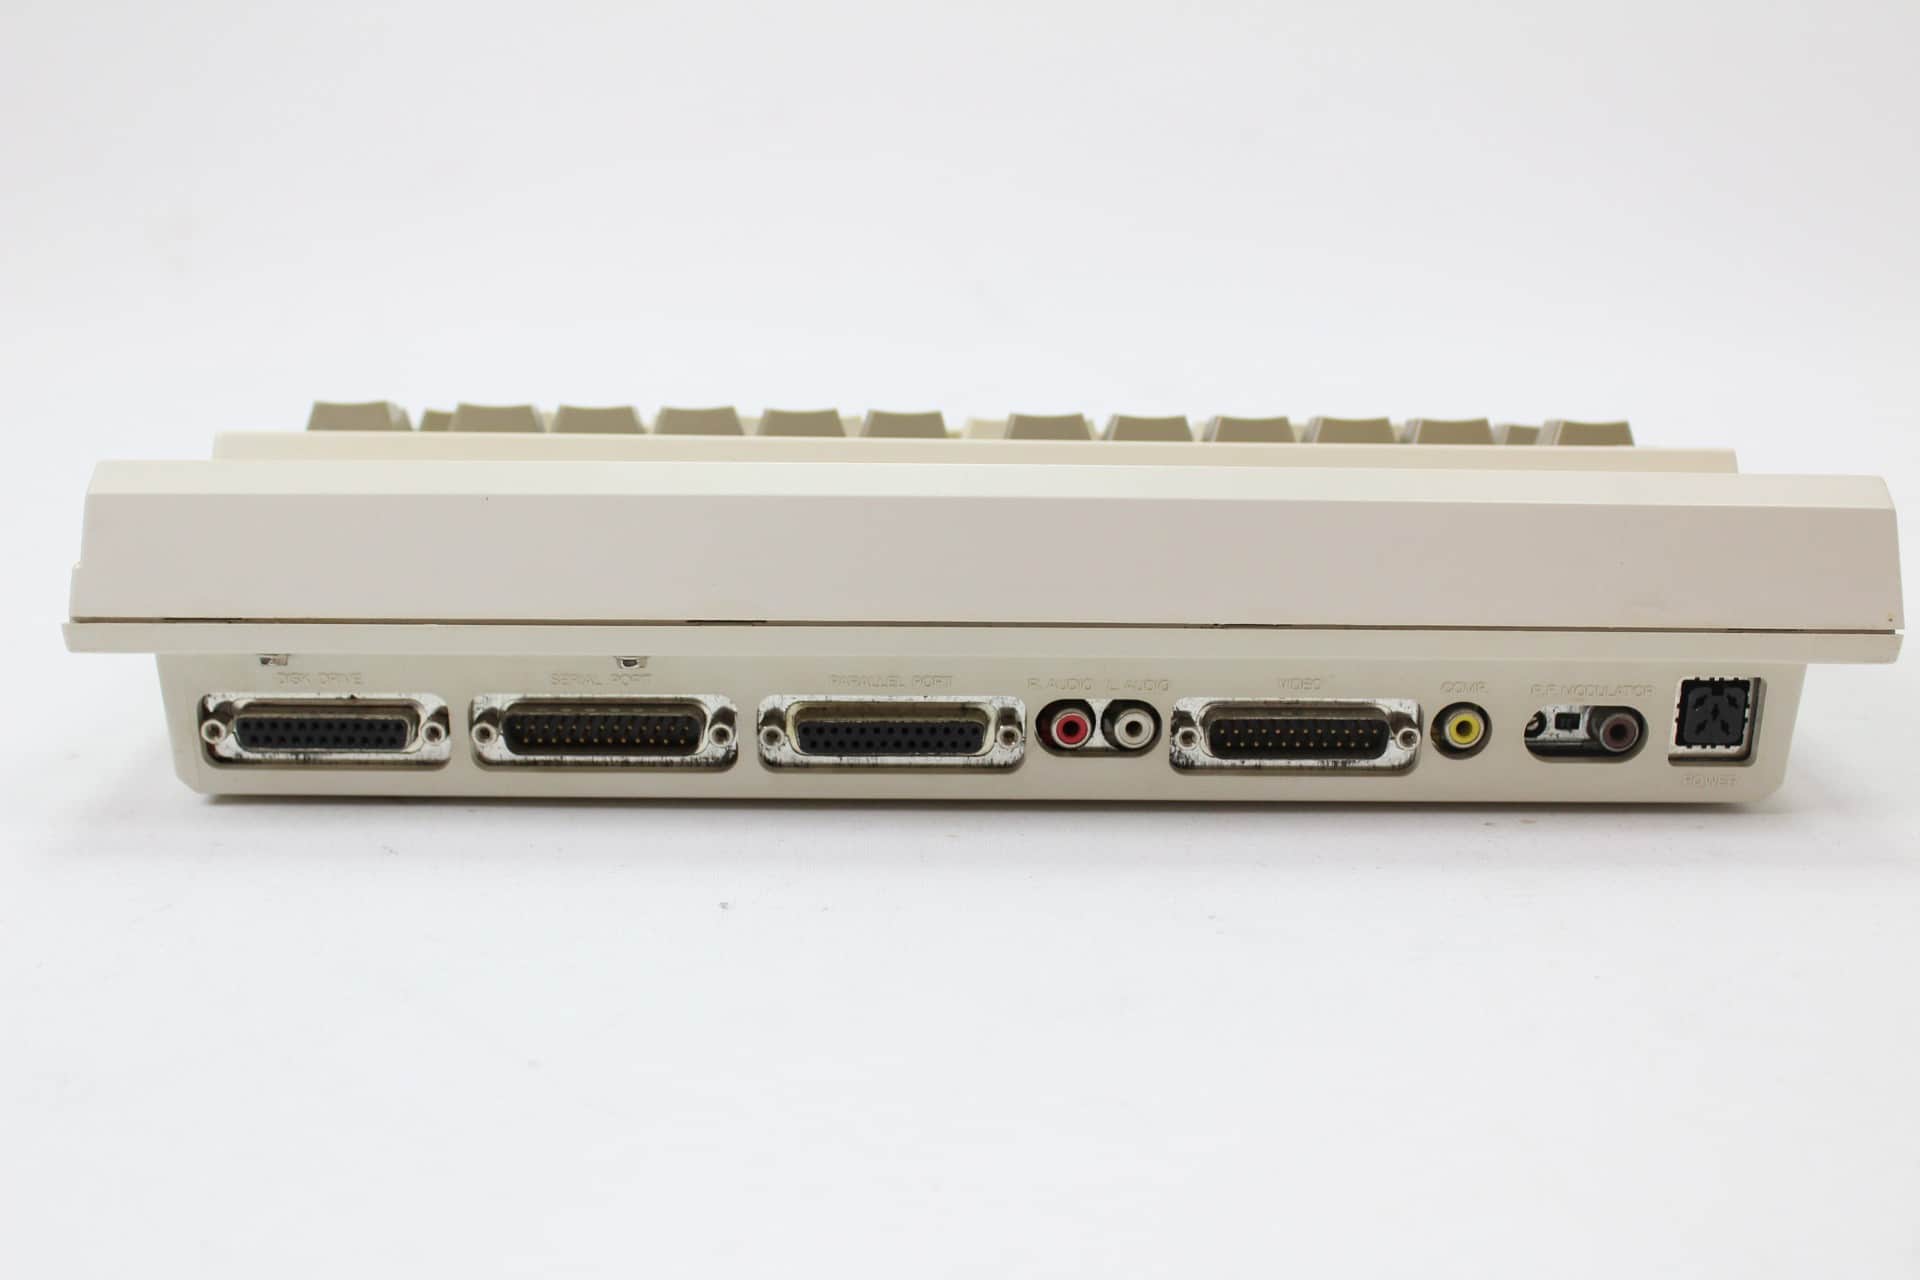 Commodore Amiga 600